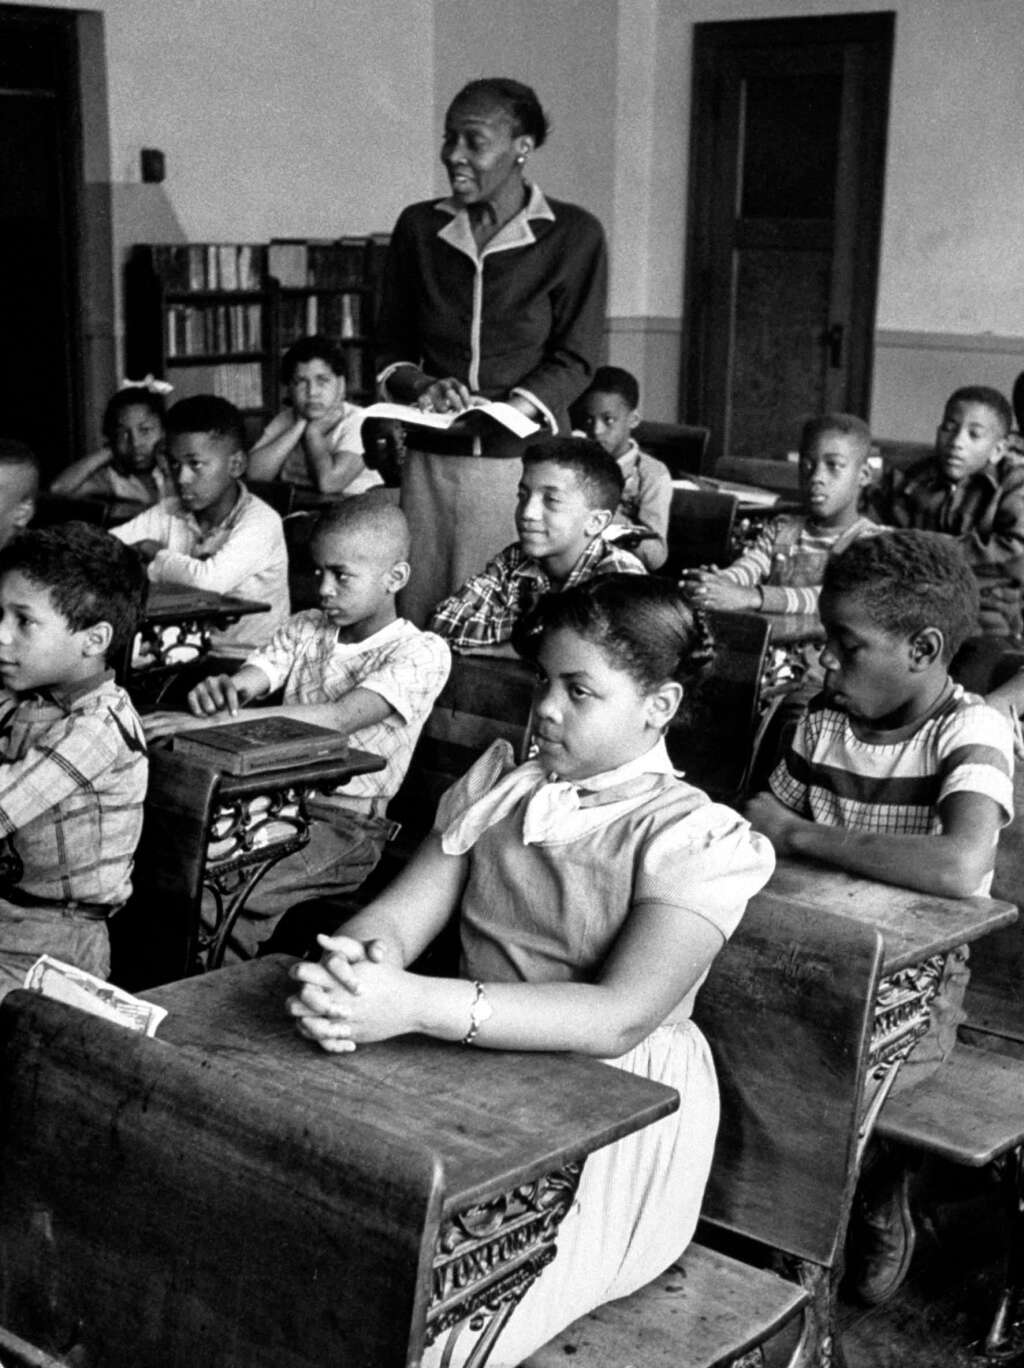 26 mars - Linda Brown - <p>Cette noire américaine dont le refus d'inscription par une école publique du Kansas a débouché en 1954 sur l'interdiction de la ségrégation raciale dans les écoles des États-Unis, est morte à l'âge de 76 ans.</p>  <p><a href="https://www.huffingtonpost.fr/2018/03/26/mort-de-linda-brown-figure-majeure-de-la-lutte-contre-la-segregation-aux-etats-unis_a_23395937/"><strong>Cliquez ici pour lire notre article sur Linda Brown</strong></a></p>